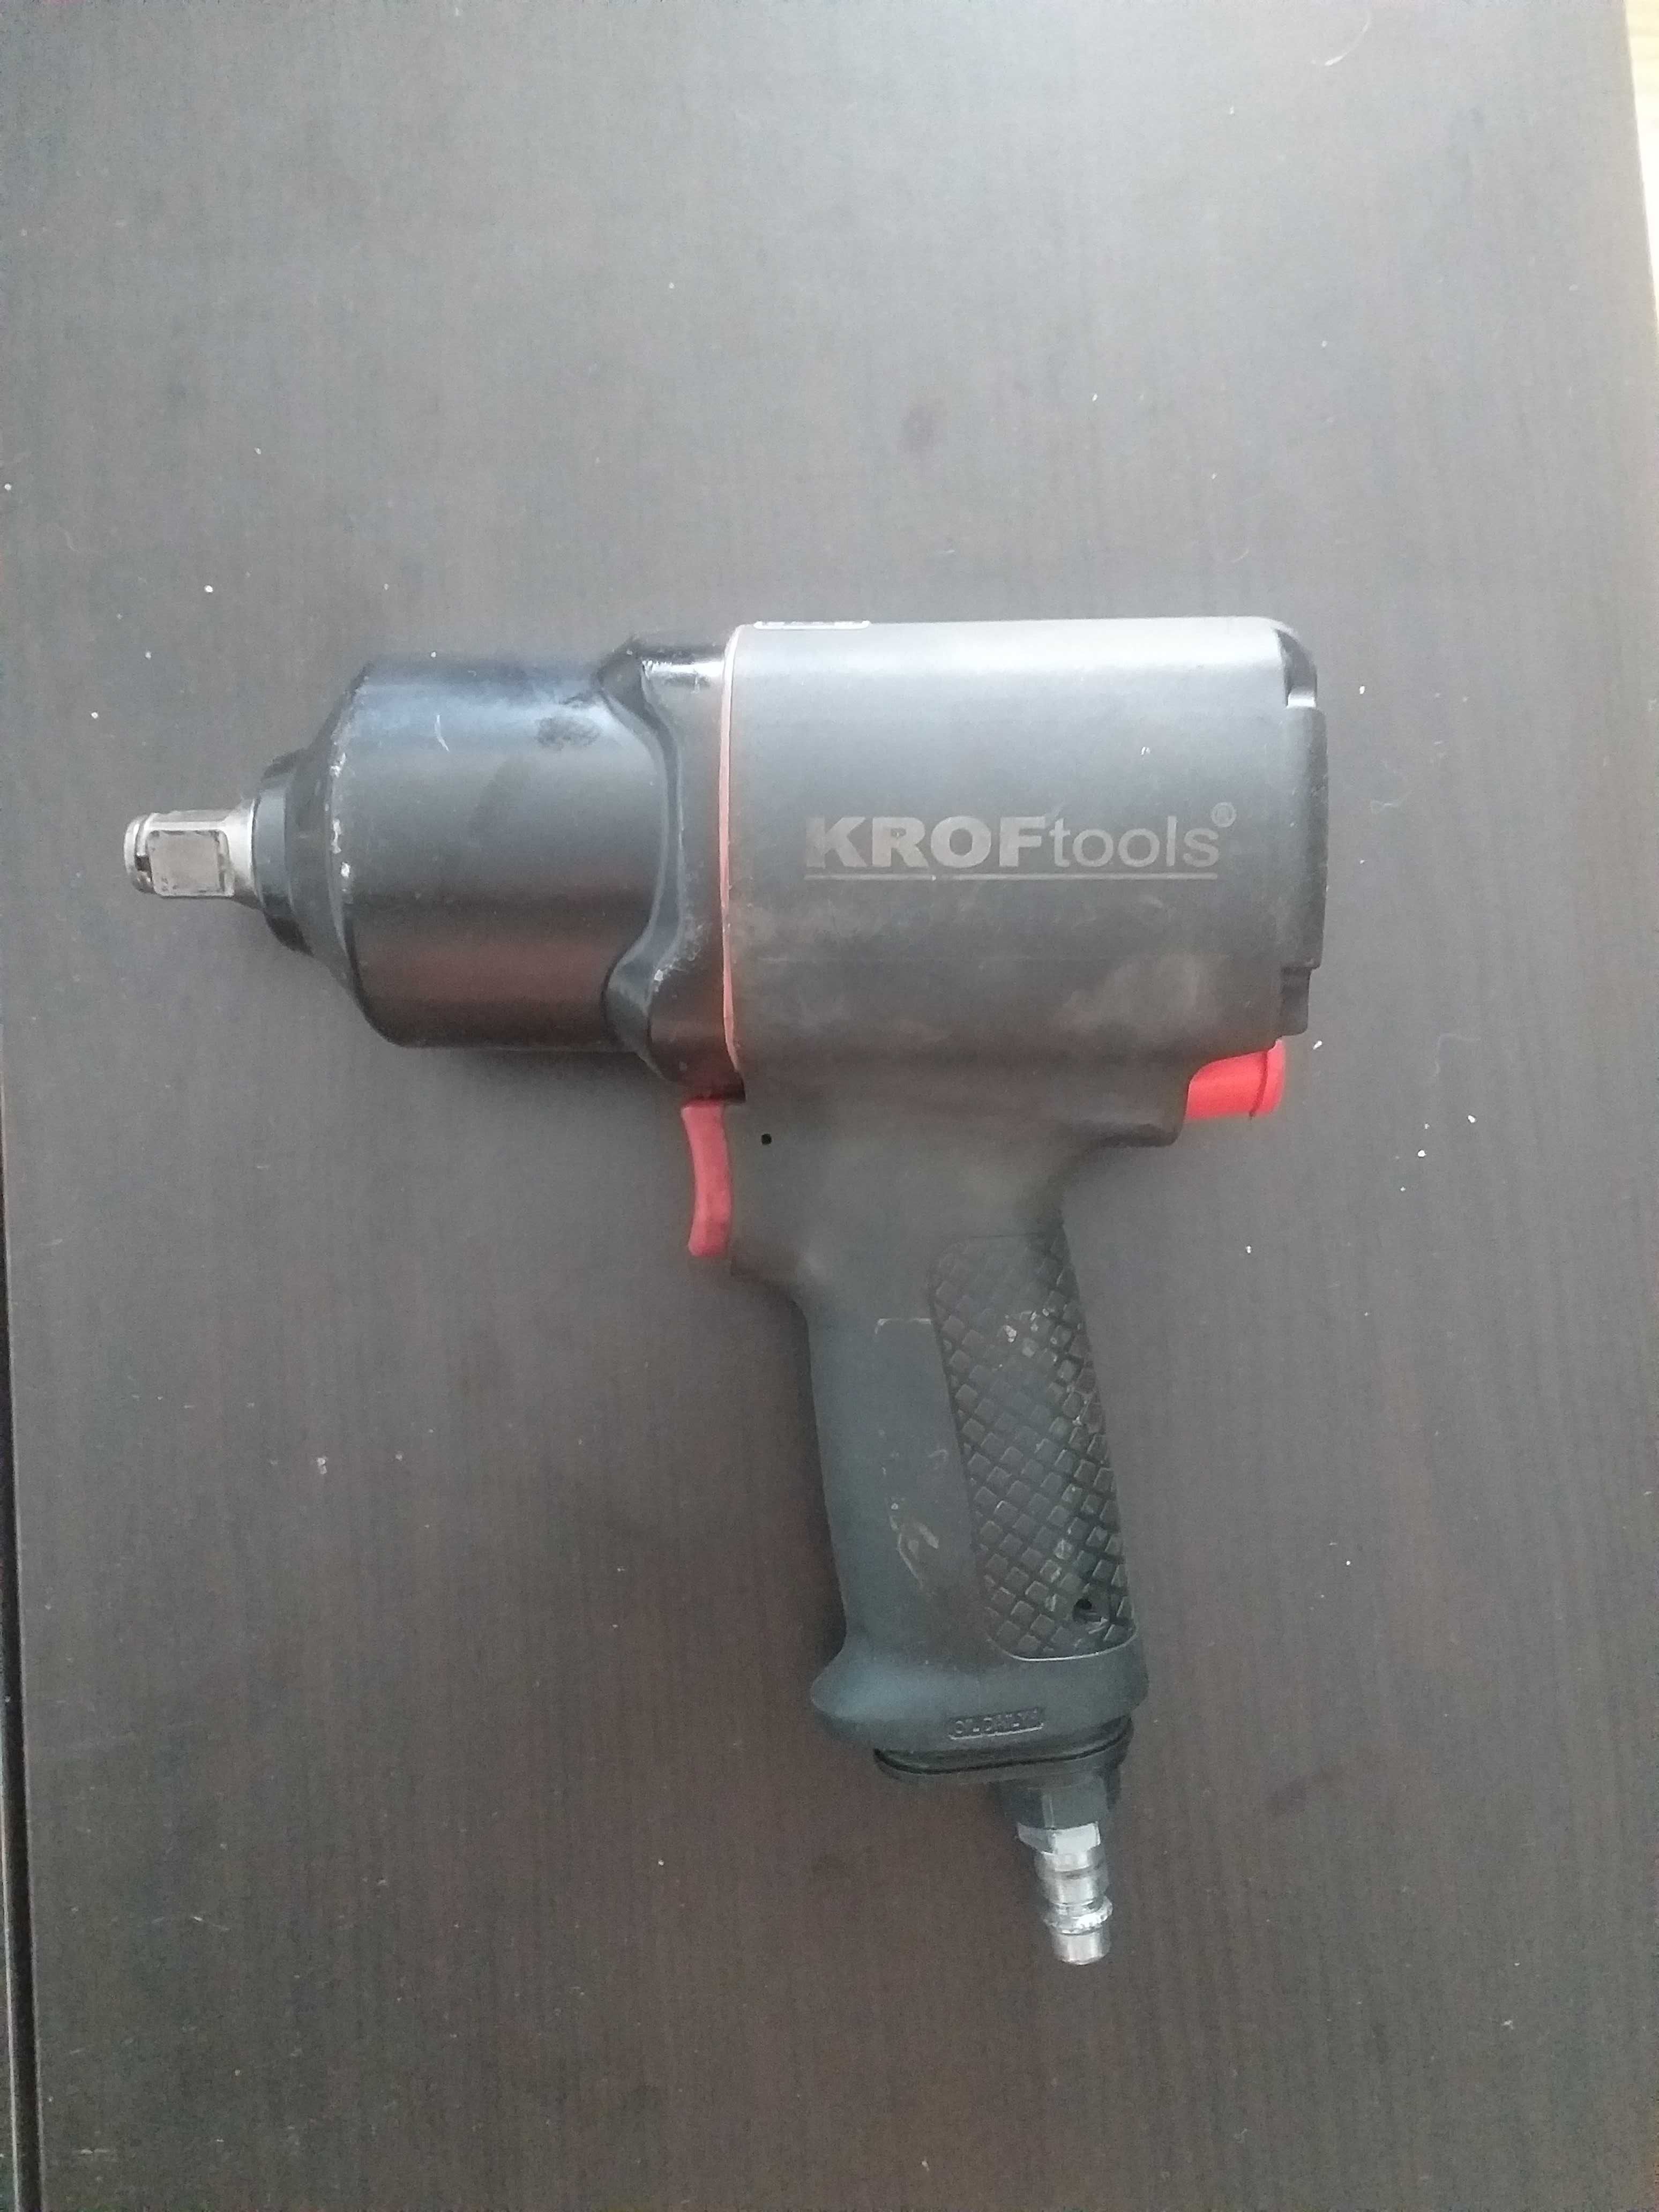 Maquina pneumatica Kroft Tools